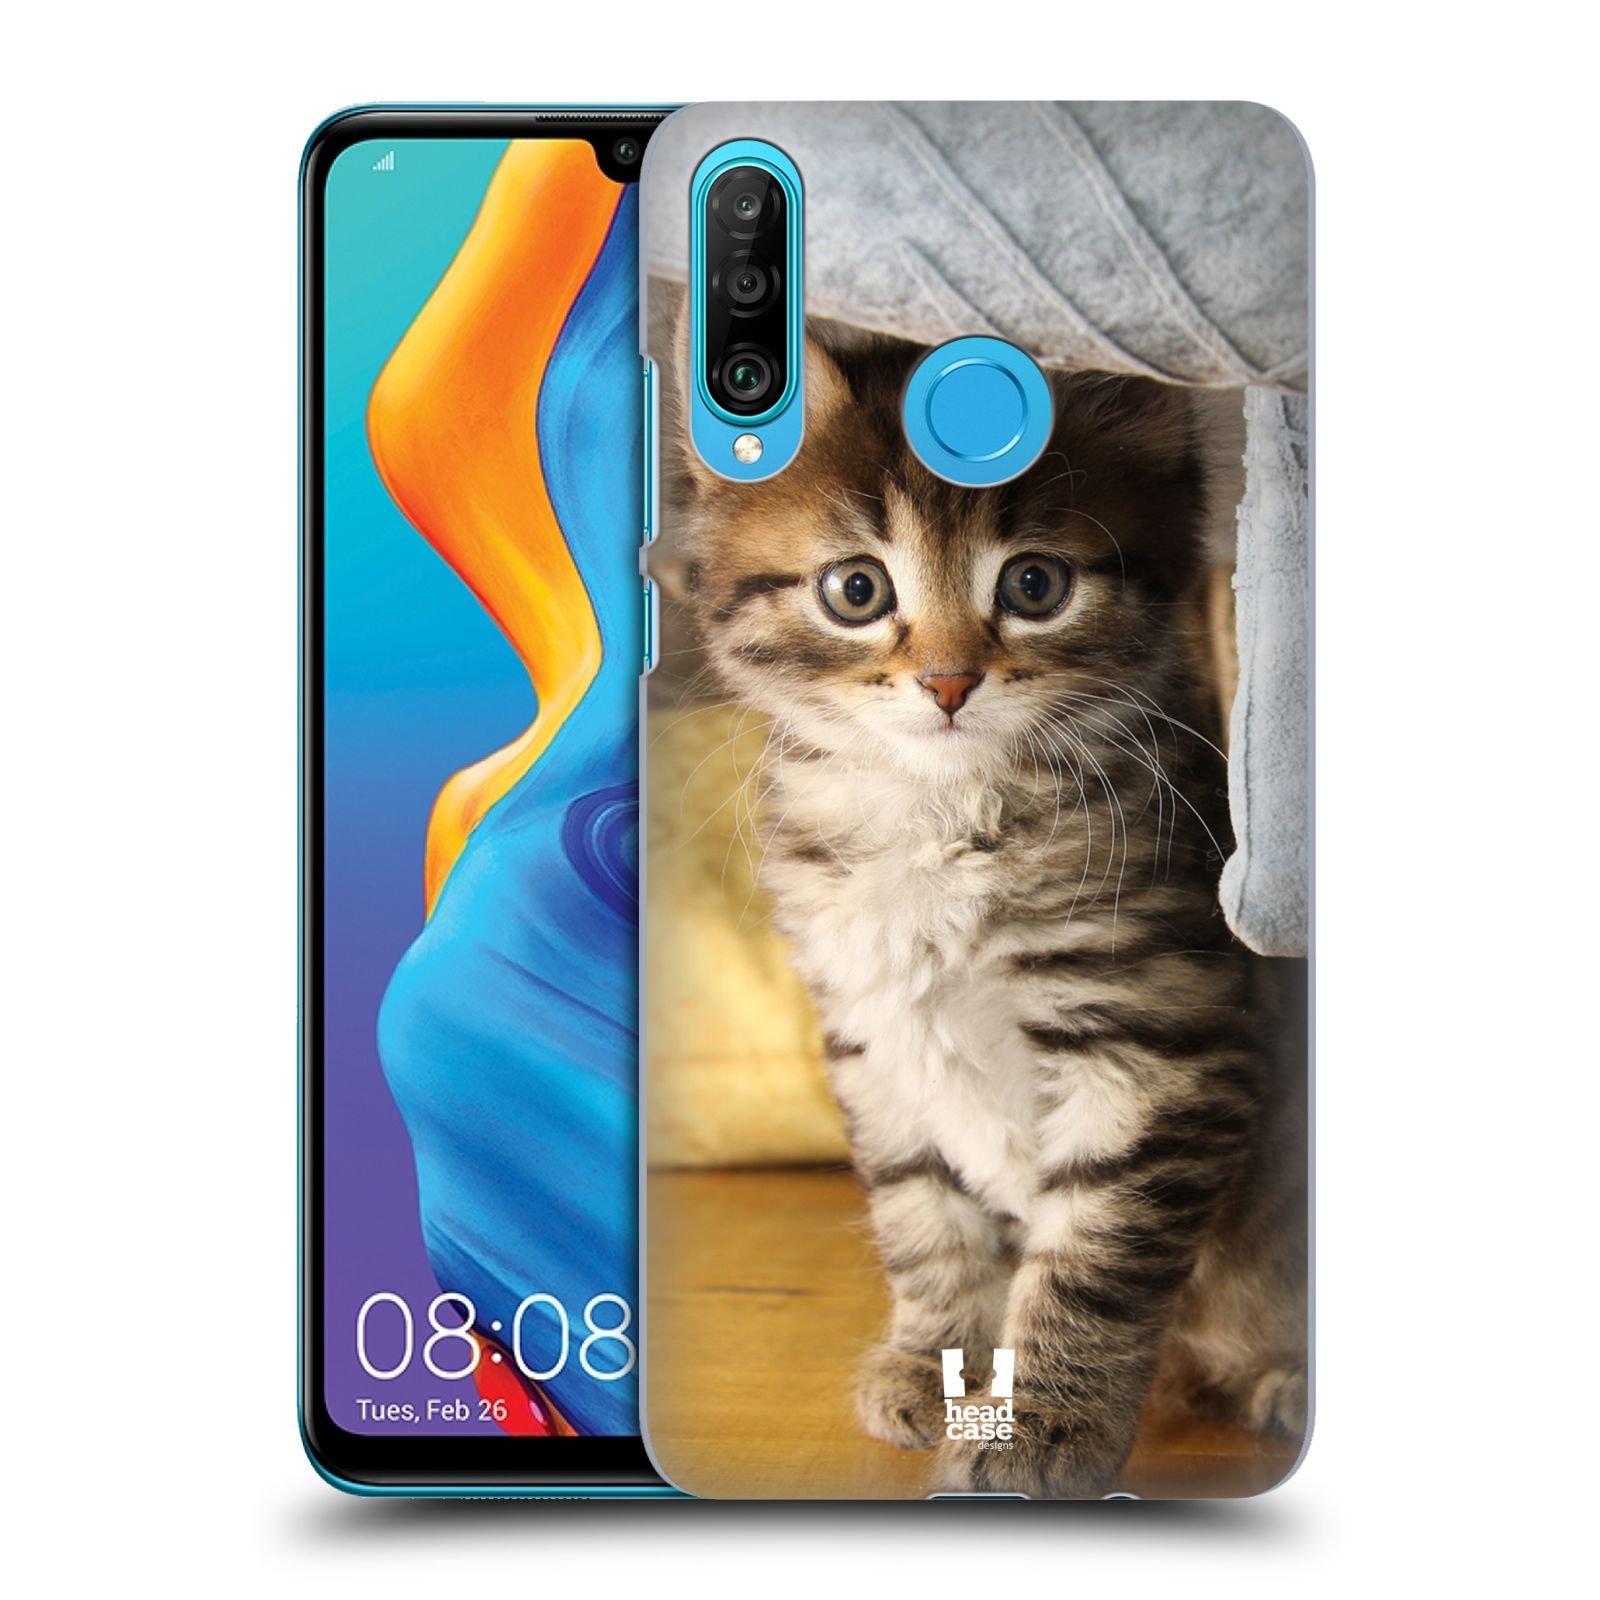 Pouzdro na mobil Huawei P30 LITE - HEAD CASE - vzor Kočičky koťata foto mourek